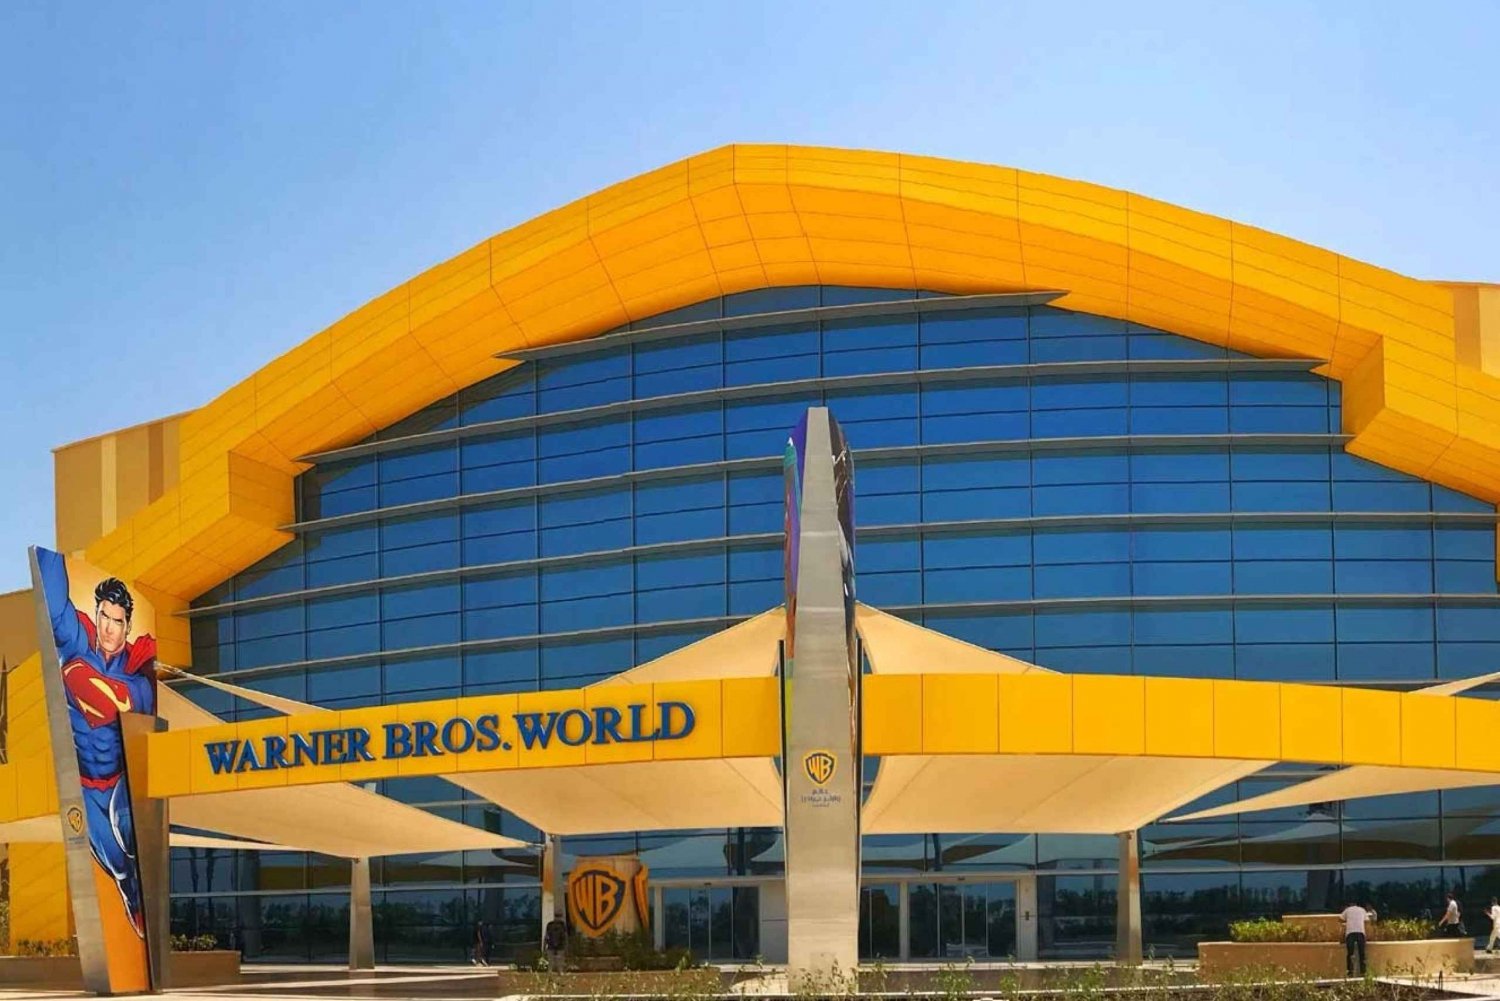 Från Dubai: Stadstur i Abu Dhabi med Warner Bros-biljetter